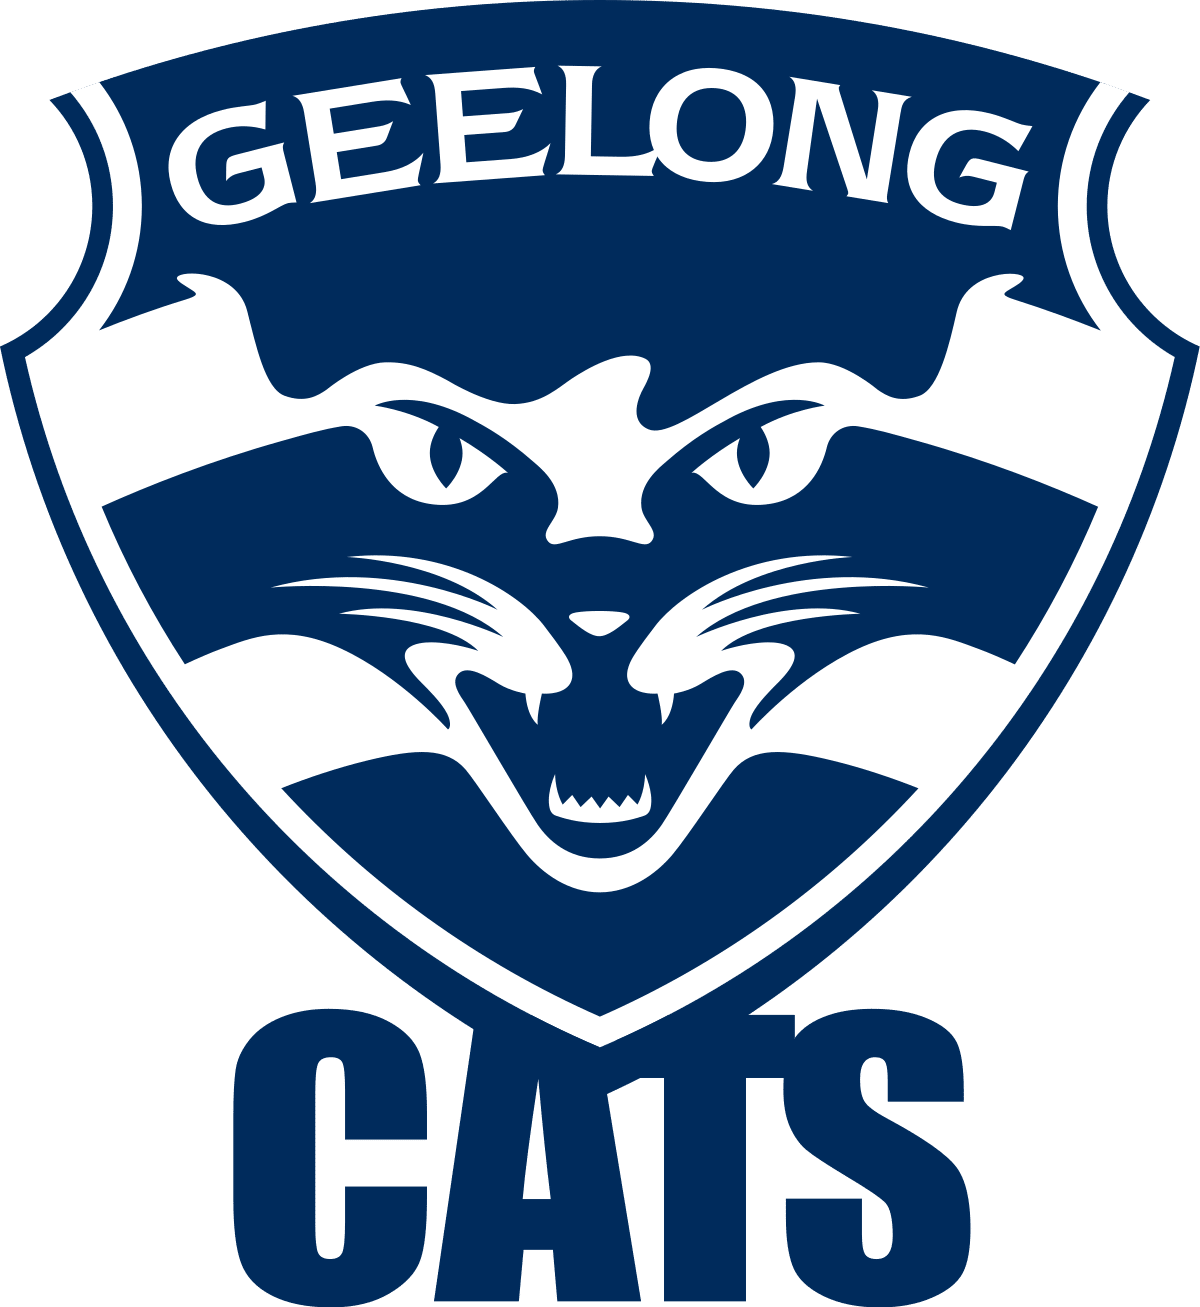 greelong cats logo